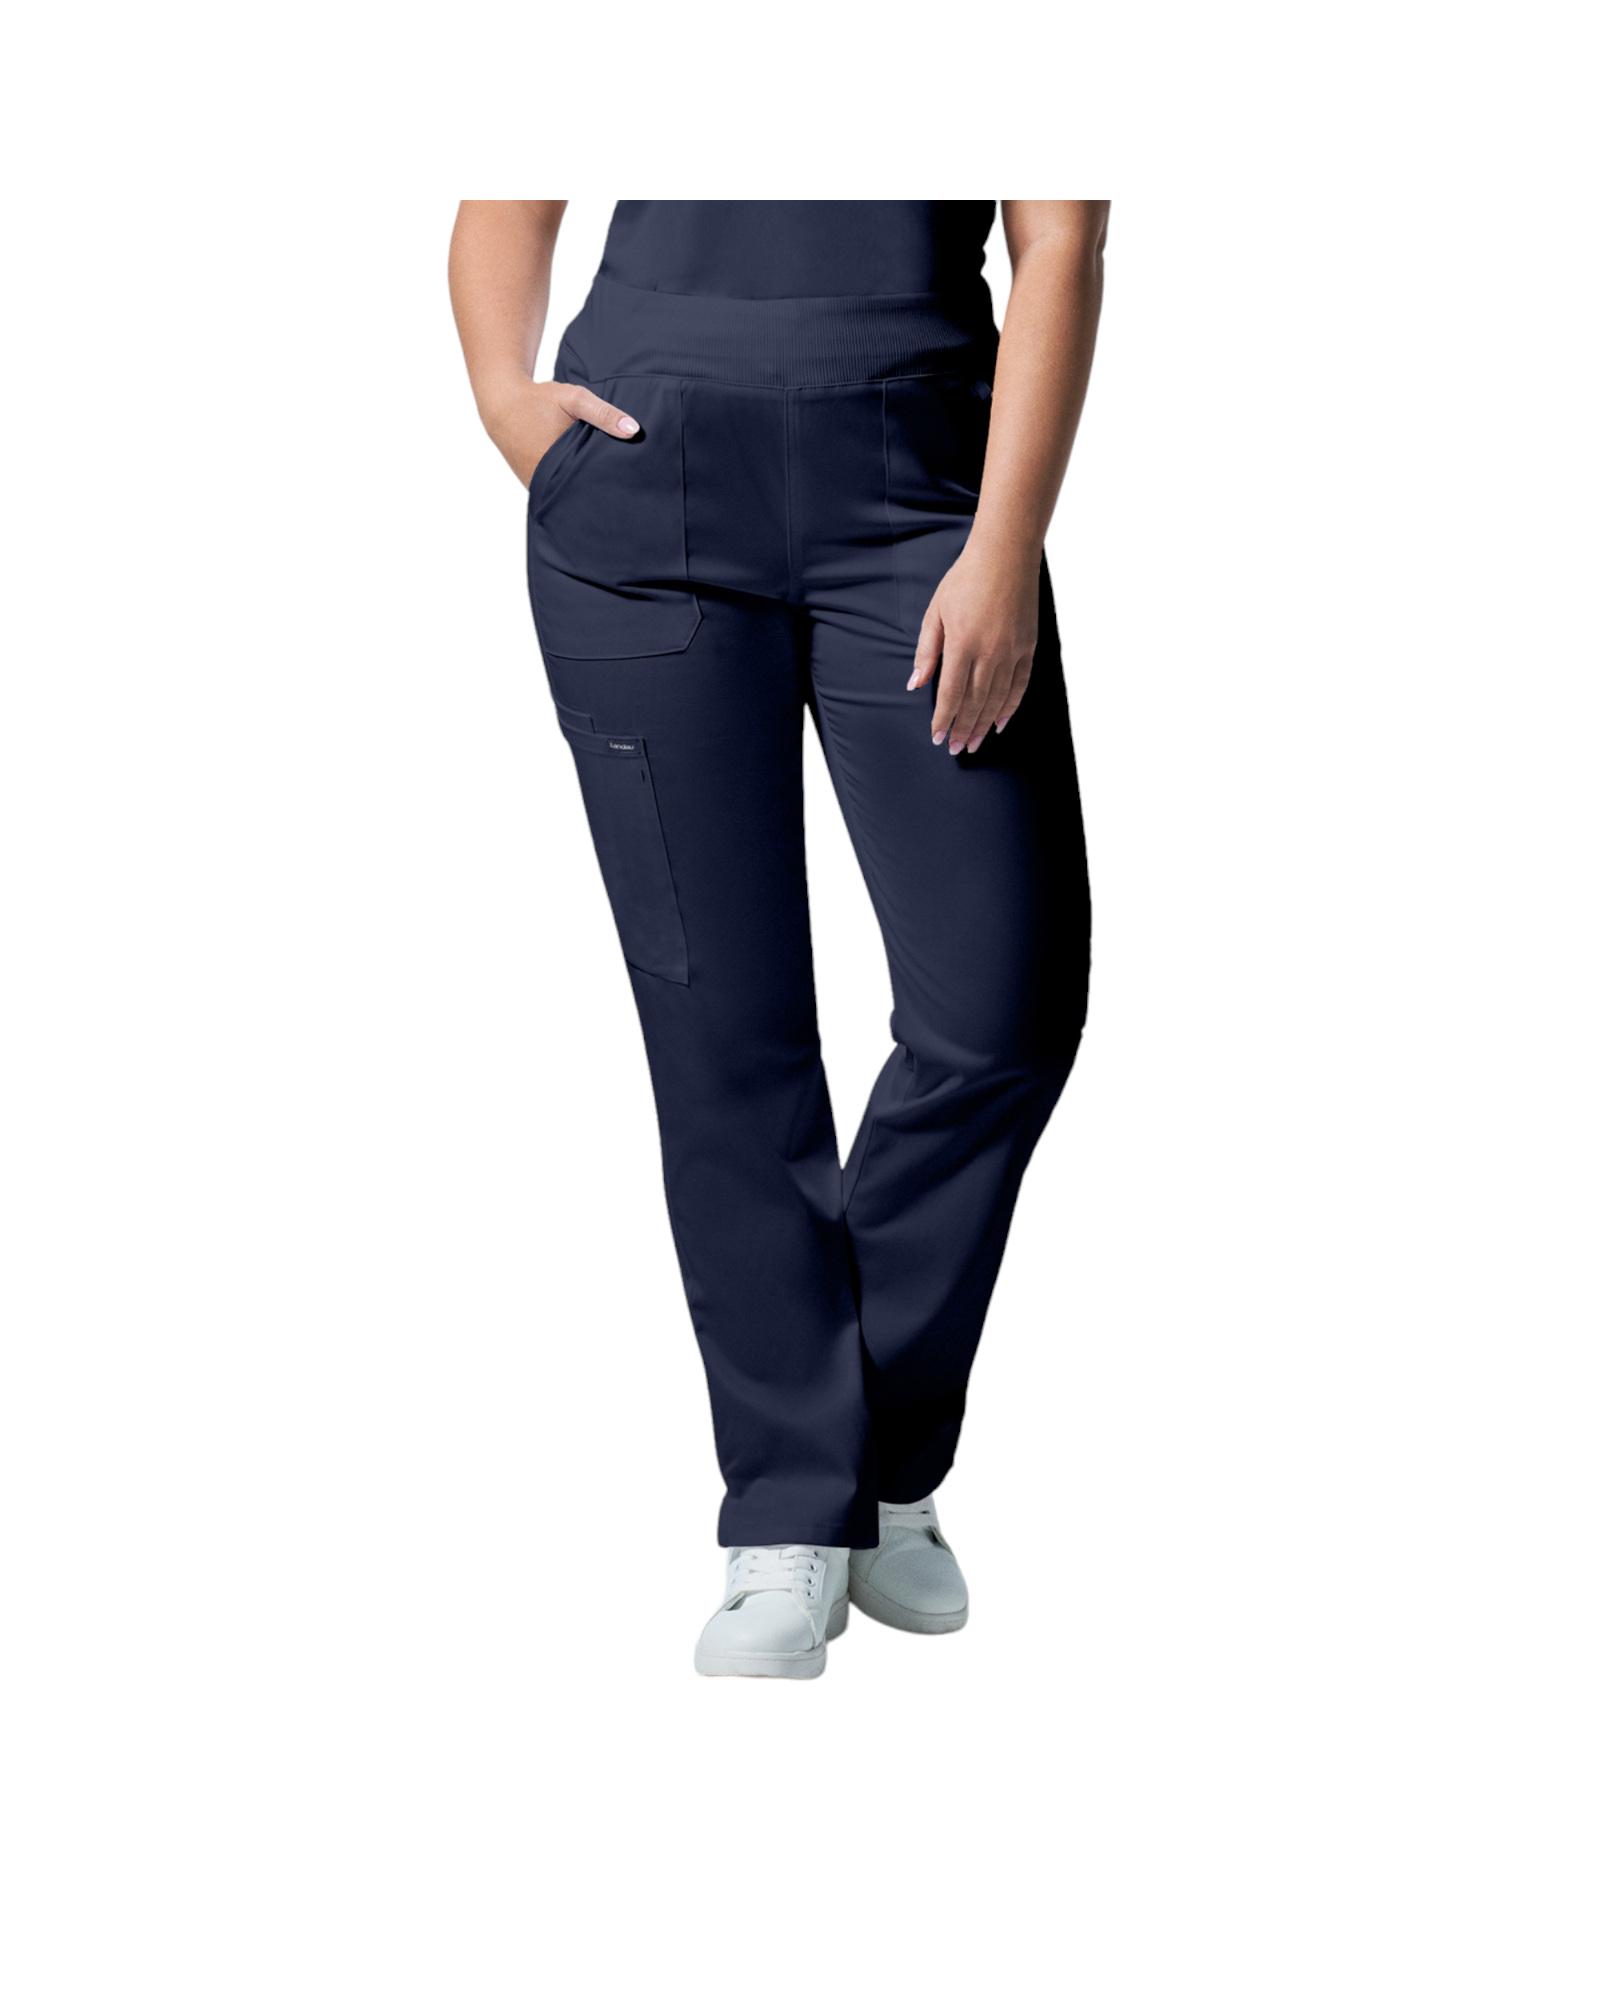 Pantalons 6 poches pour femmes Landau Proflex #LB405 OS couleur Marine